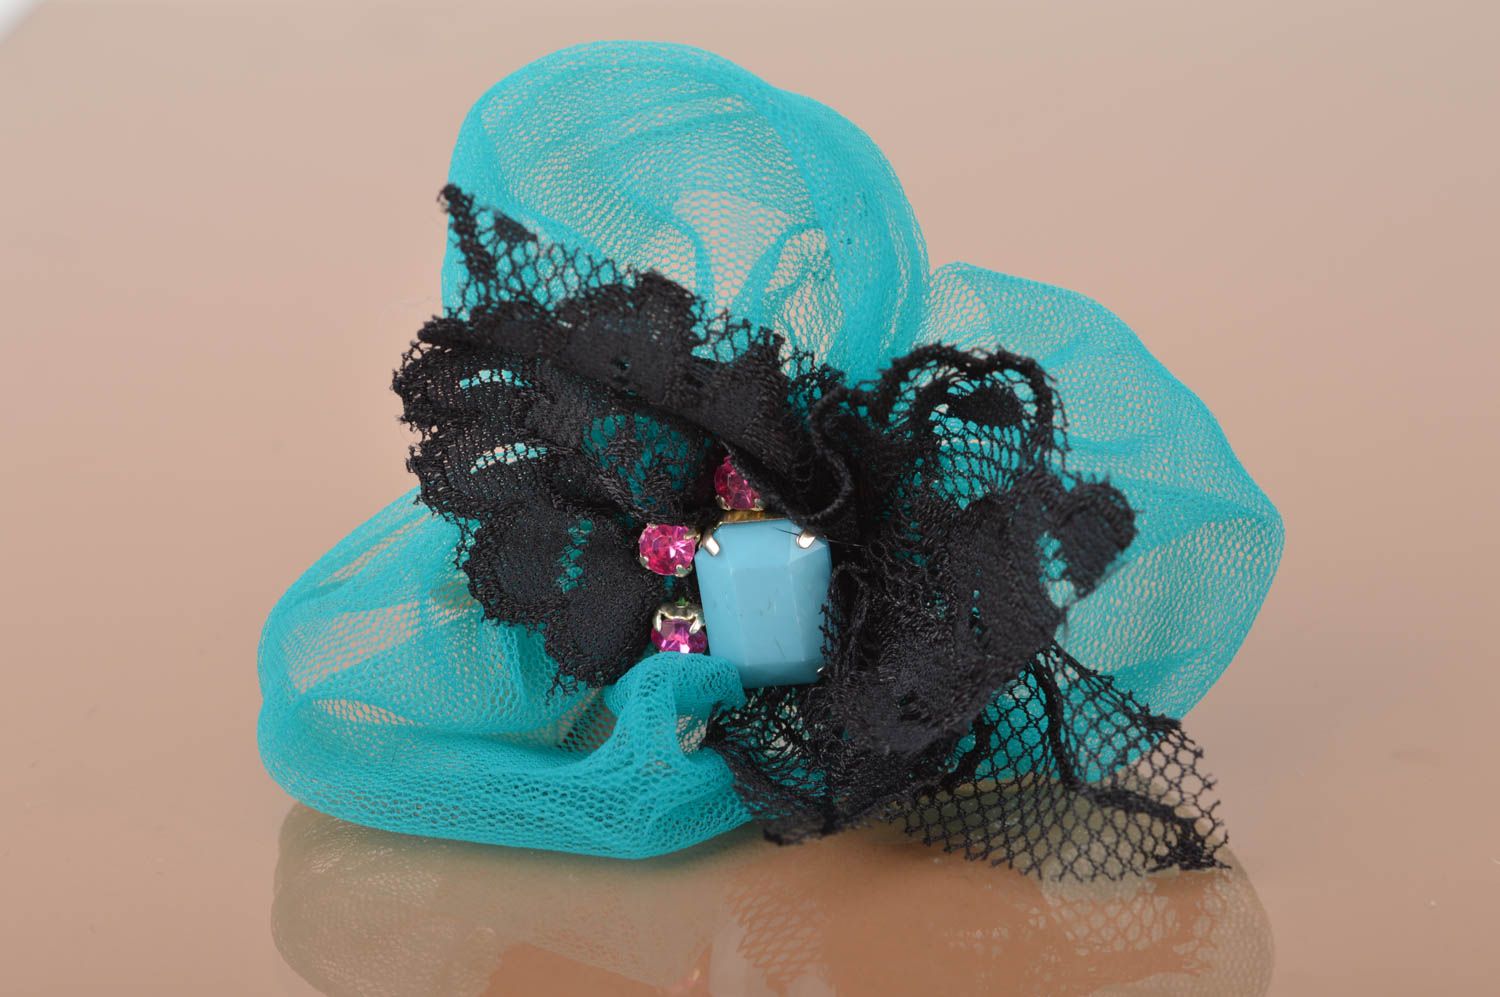 Barrette broche fleur turquoise avec dentelle noire faite main accessoire photo 2